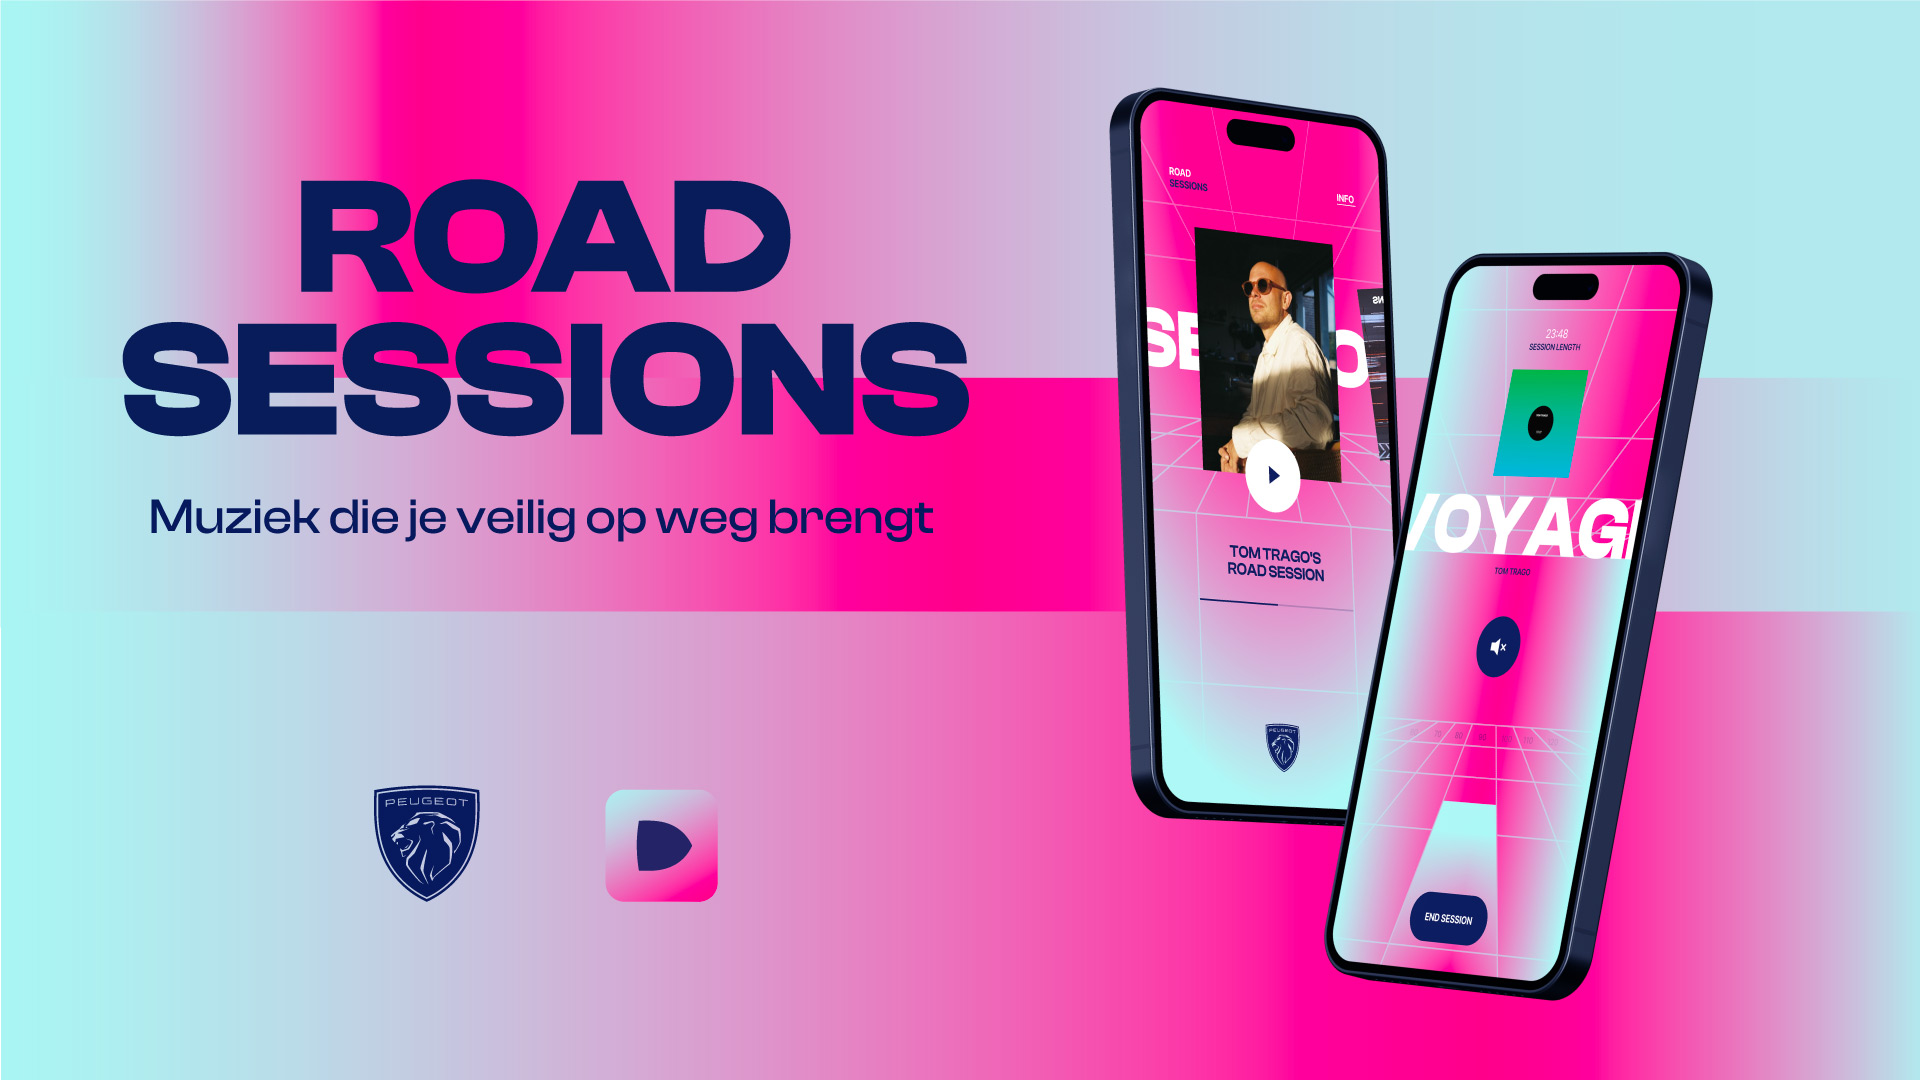 01 Road Sessions PEUGEOT app gebruikt muziek om jonge bestuurder rustiger te laten rijden